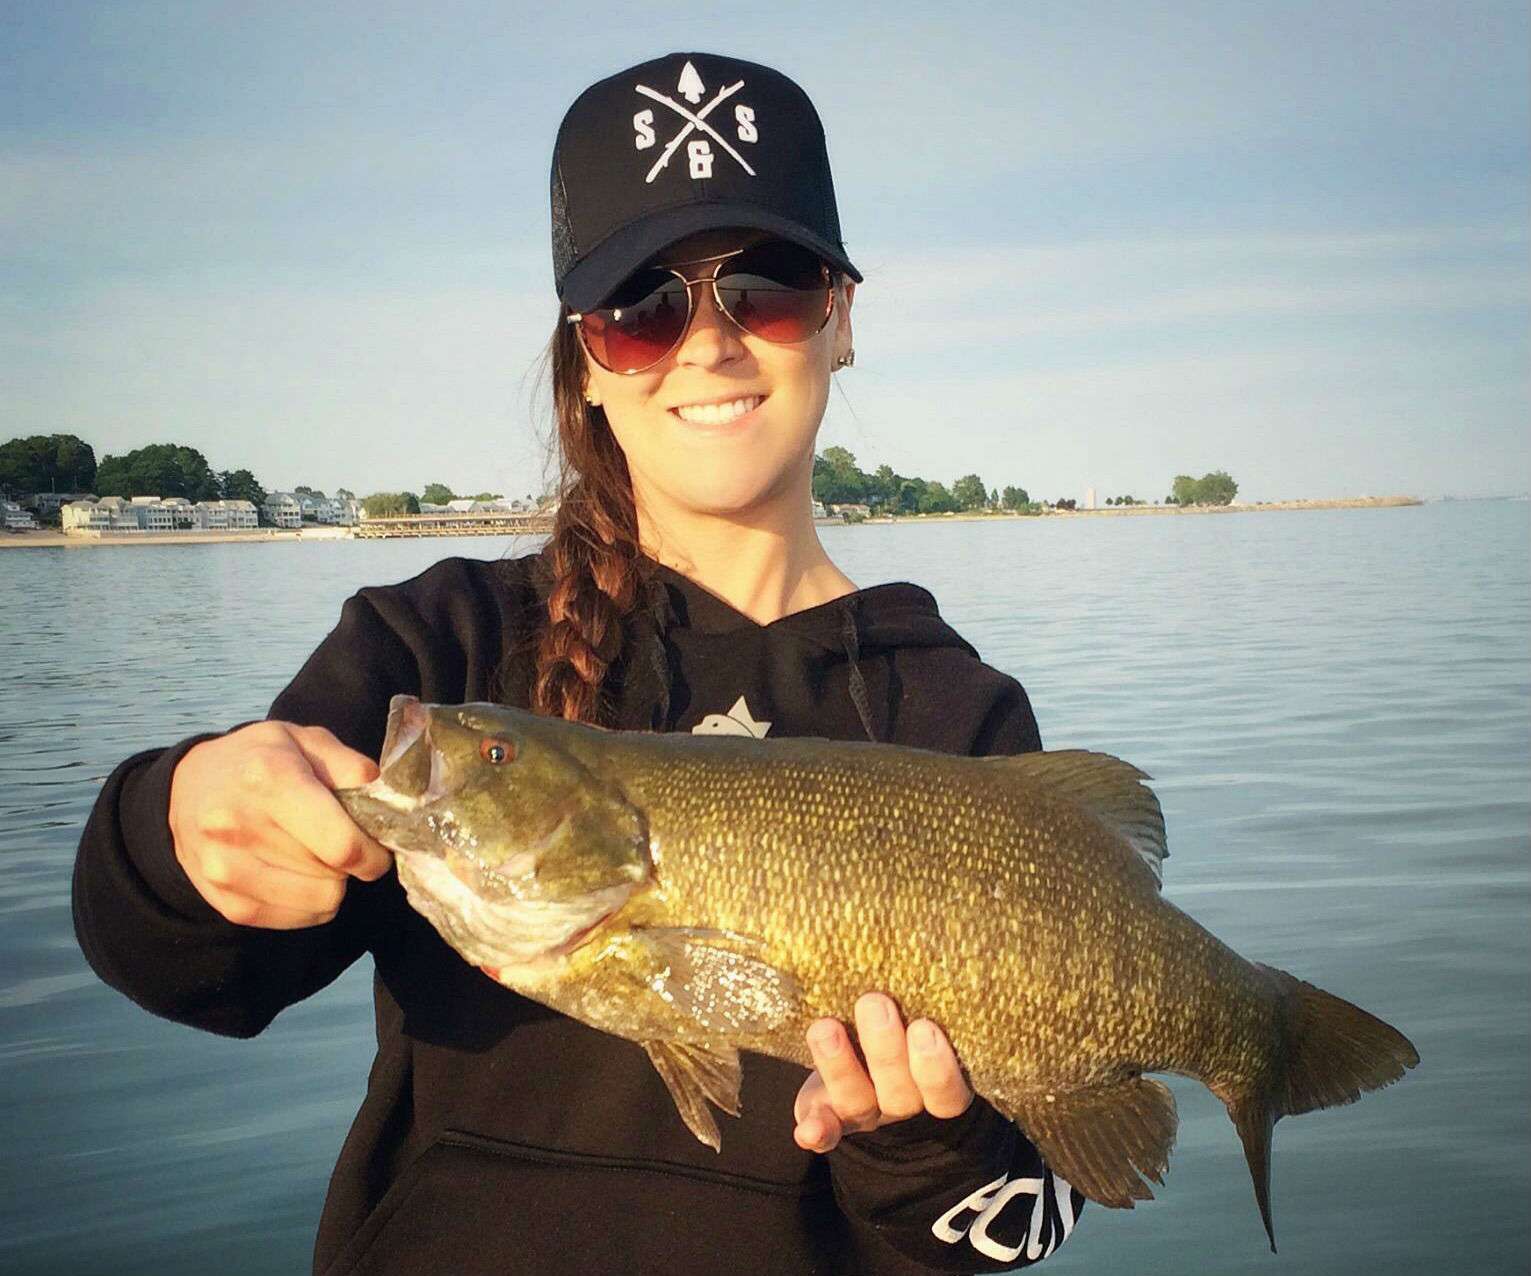 âI caught this smallmouth bass last night on Lake Erie.â Submitted by Kayla